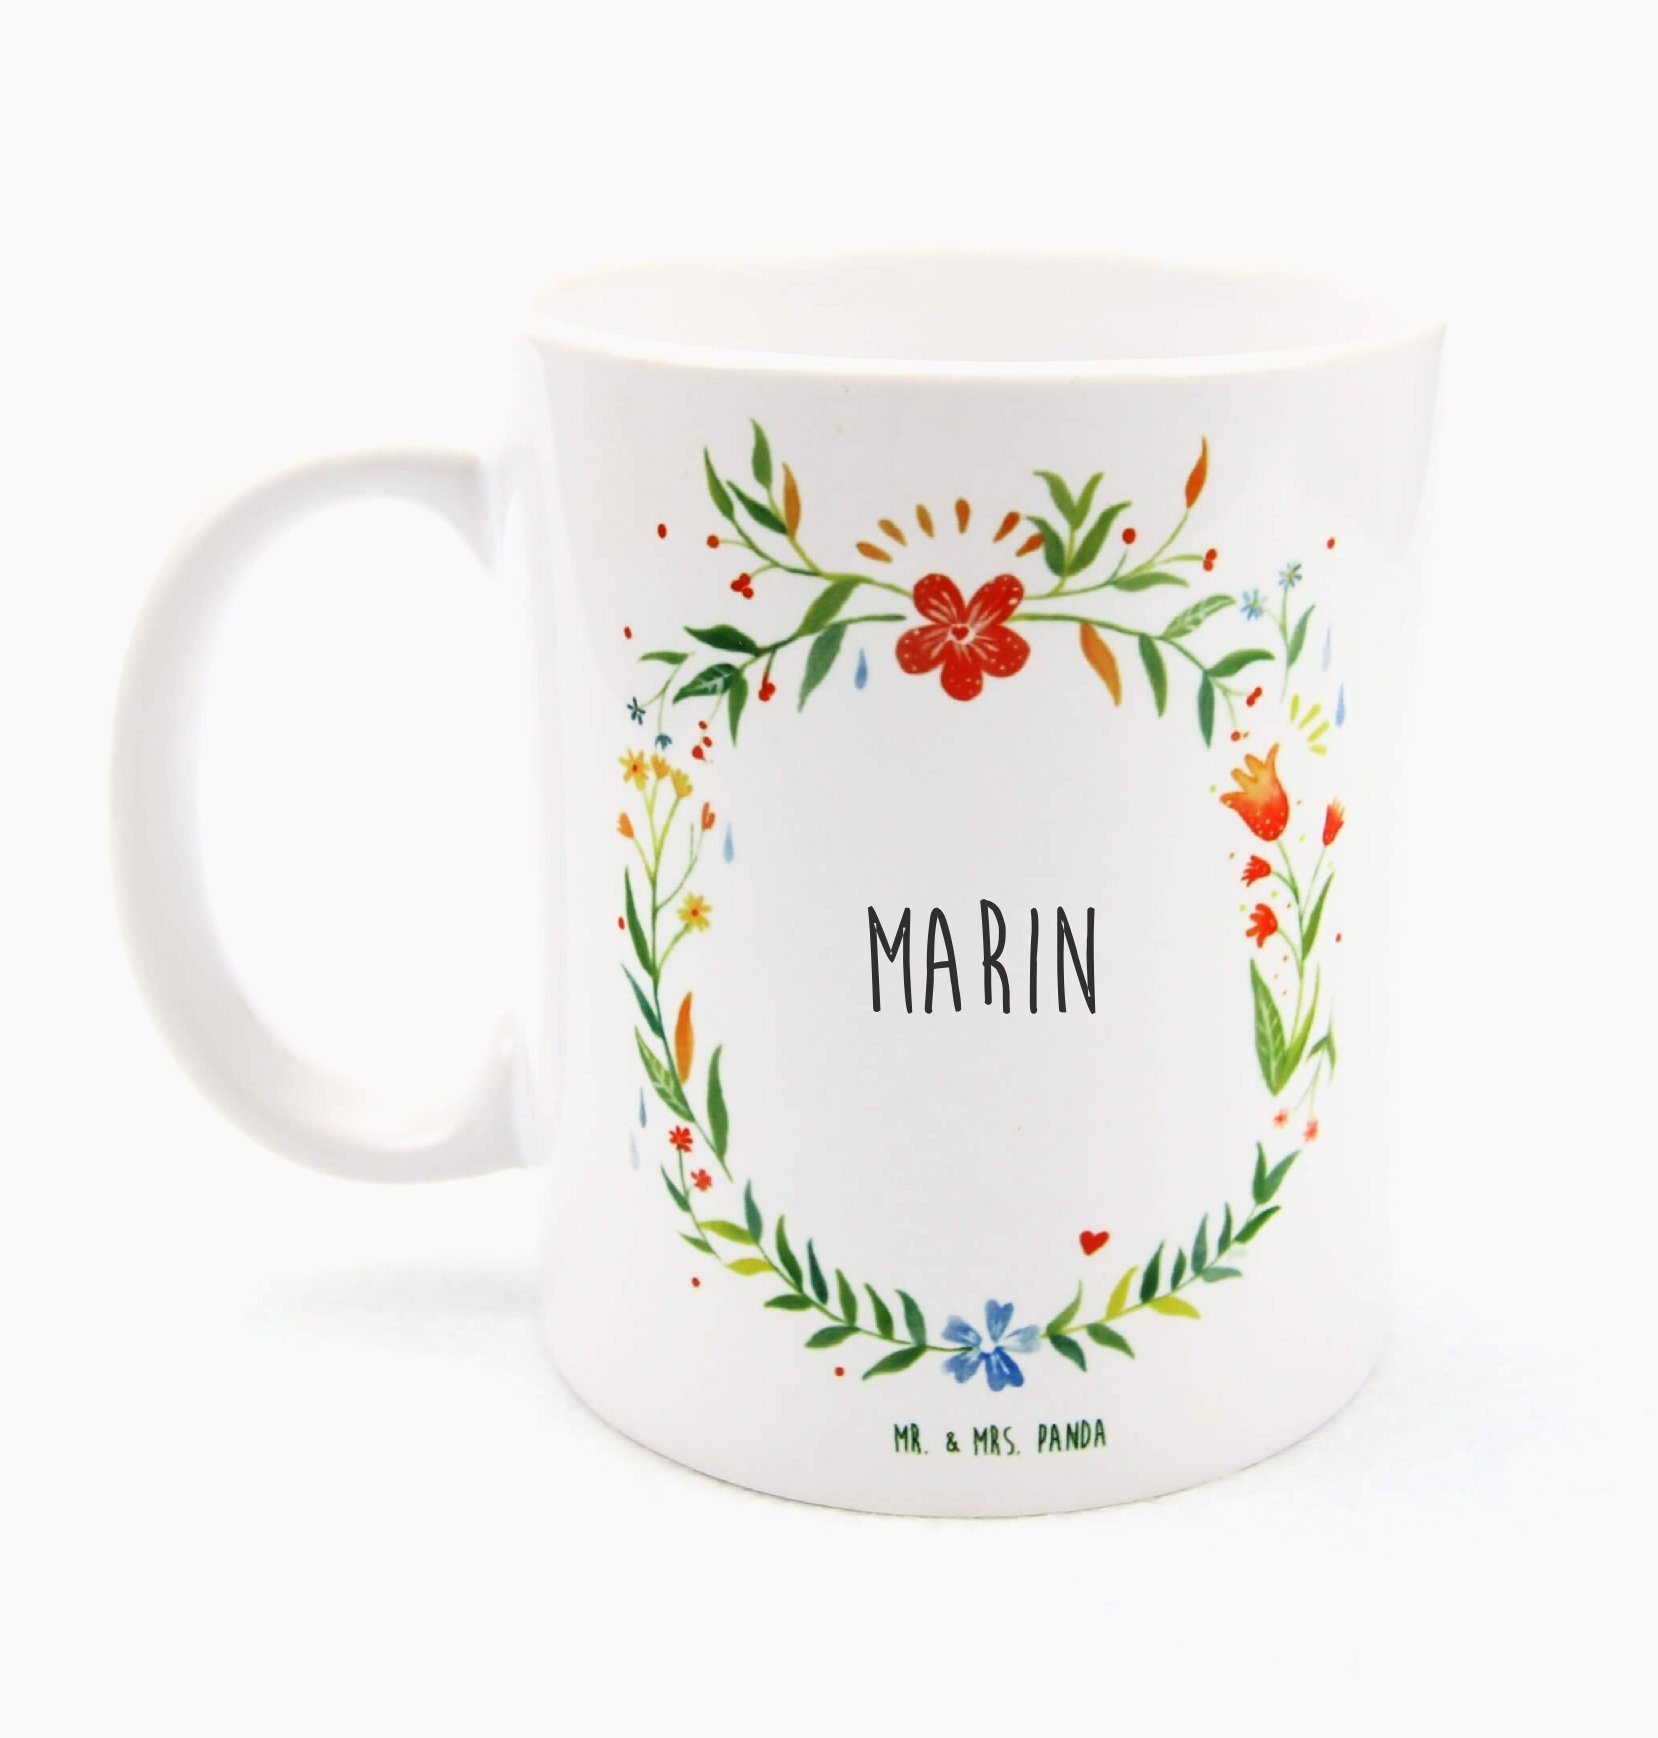 Mr. & Mrs. Panda Tasse Marin - Geschenk, Geschenk Tasse, Kaffeetasse, Tasse Sprüche, Kaffeeb, Keramik